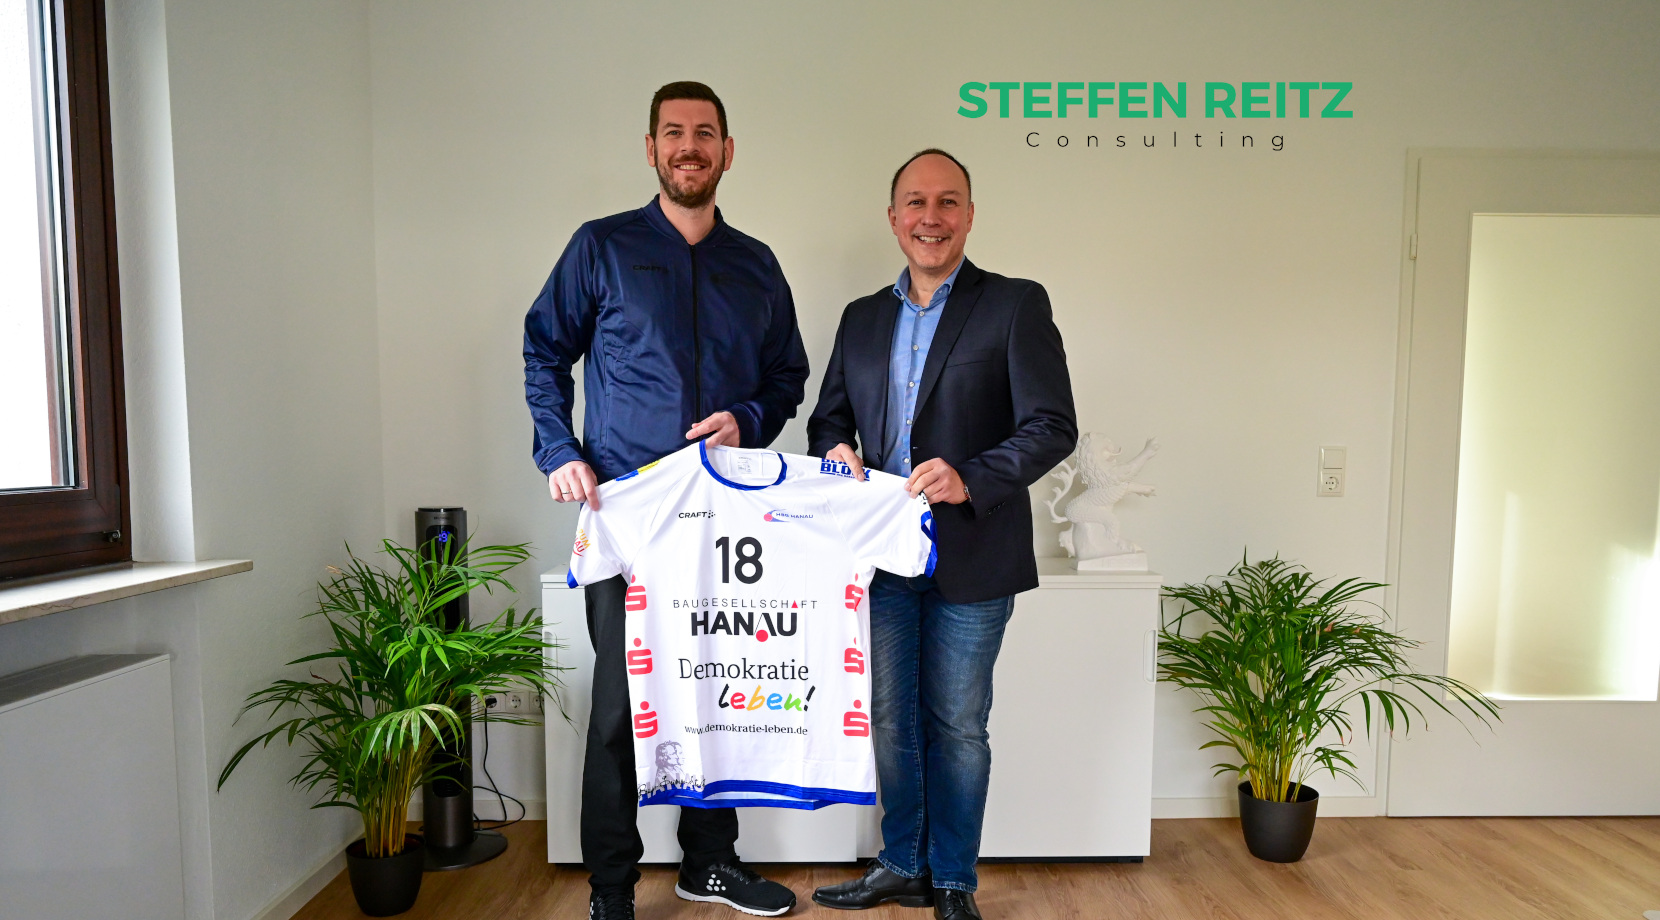 Steffen Reitz Consulting neuer Partner der HSG Hanau